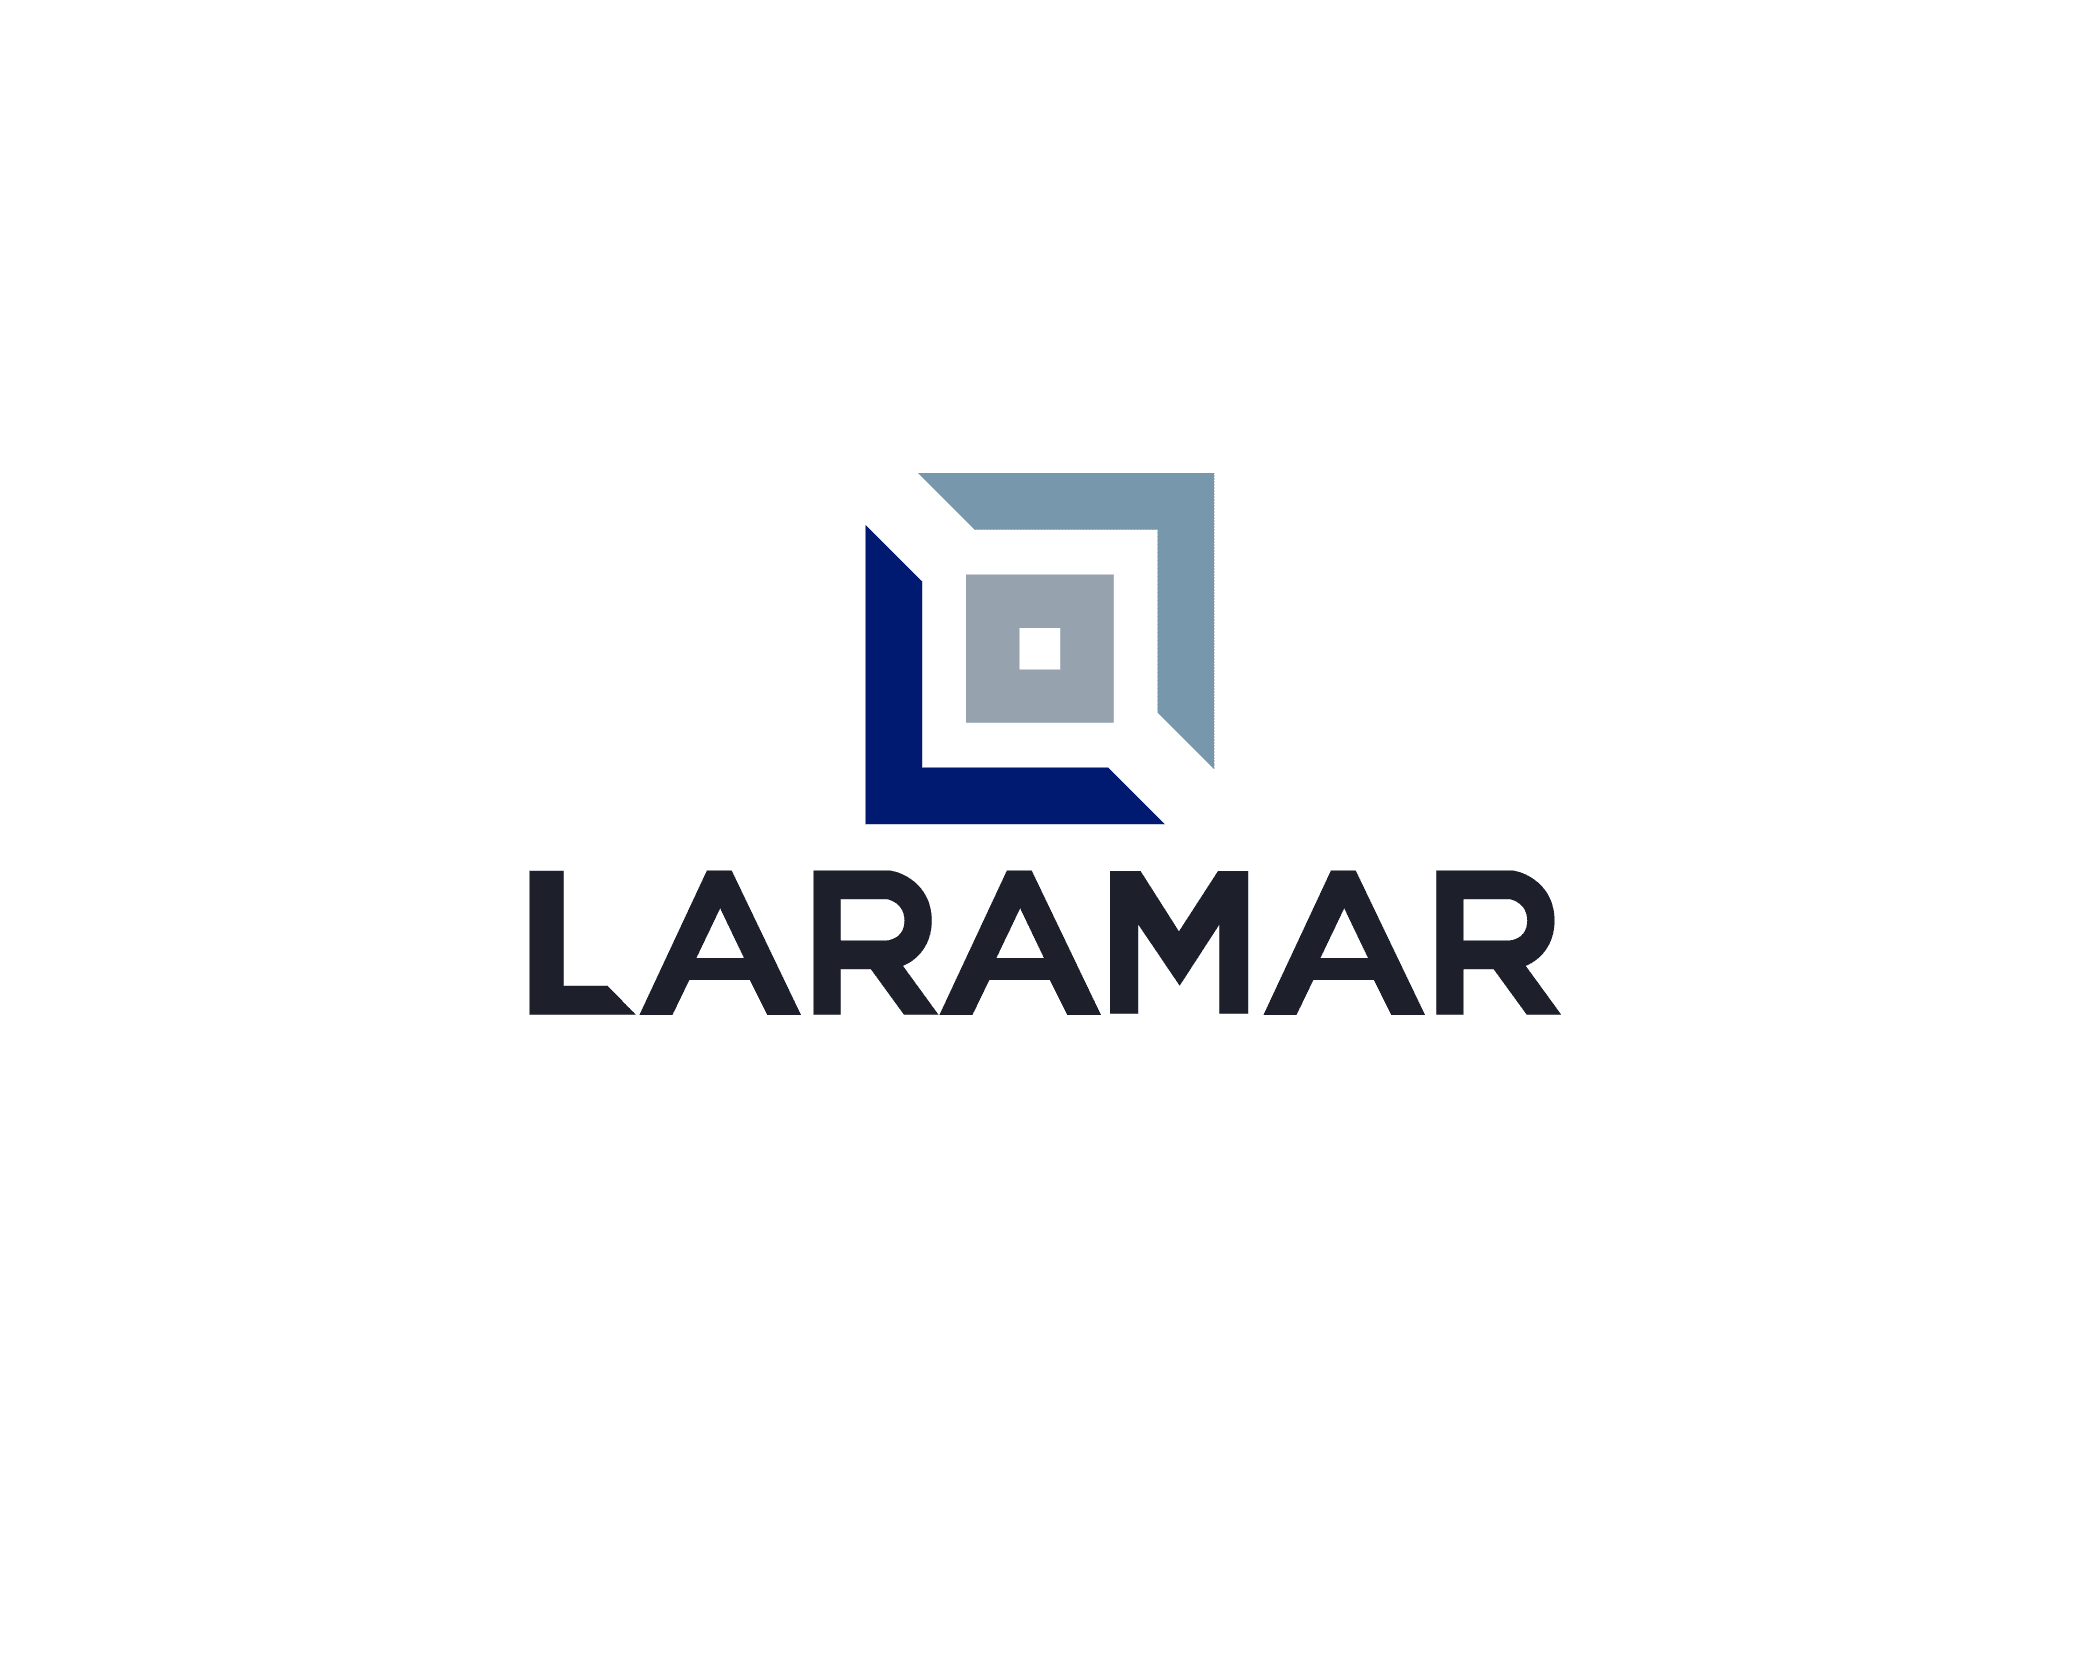 Laramar